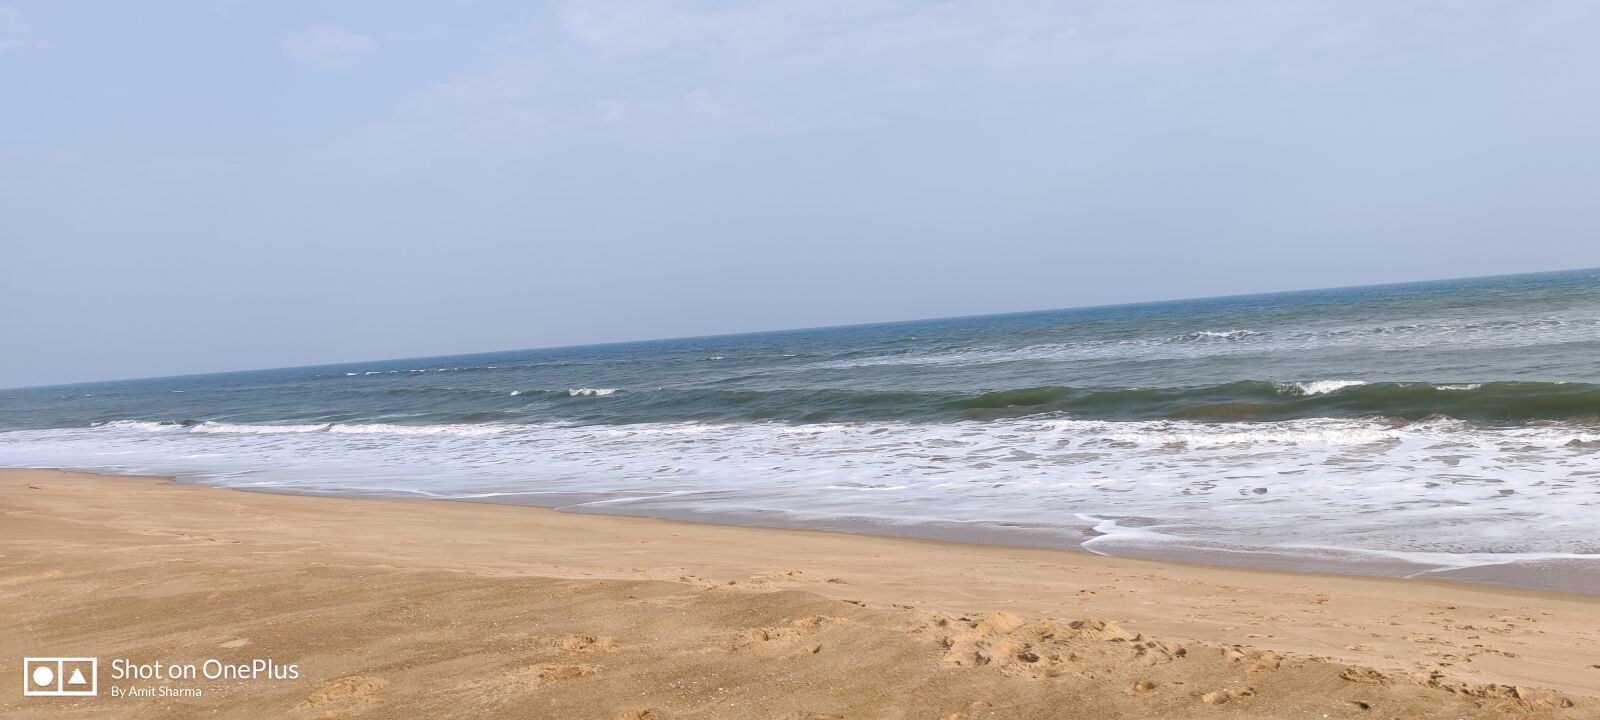 OnePlus HD1901 sample photo. Sea, peace, peaceful photography